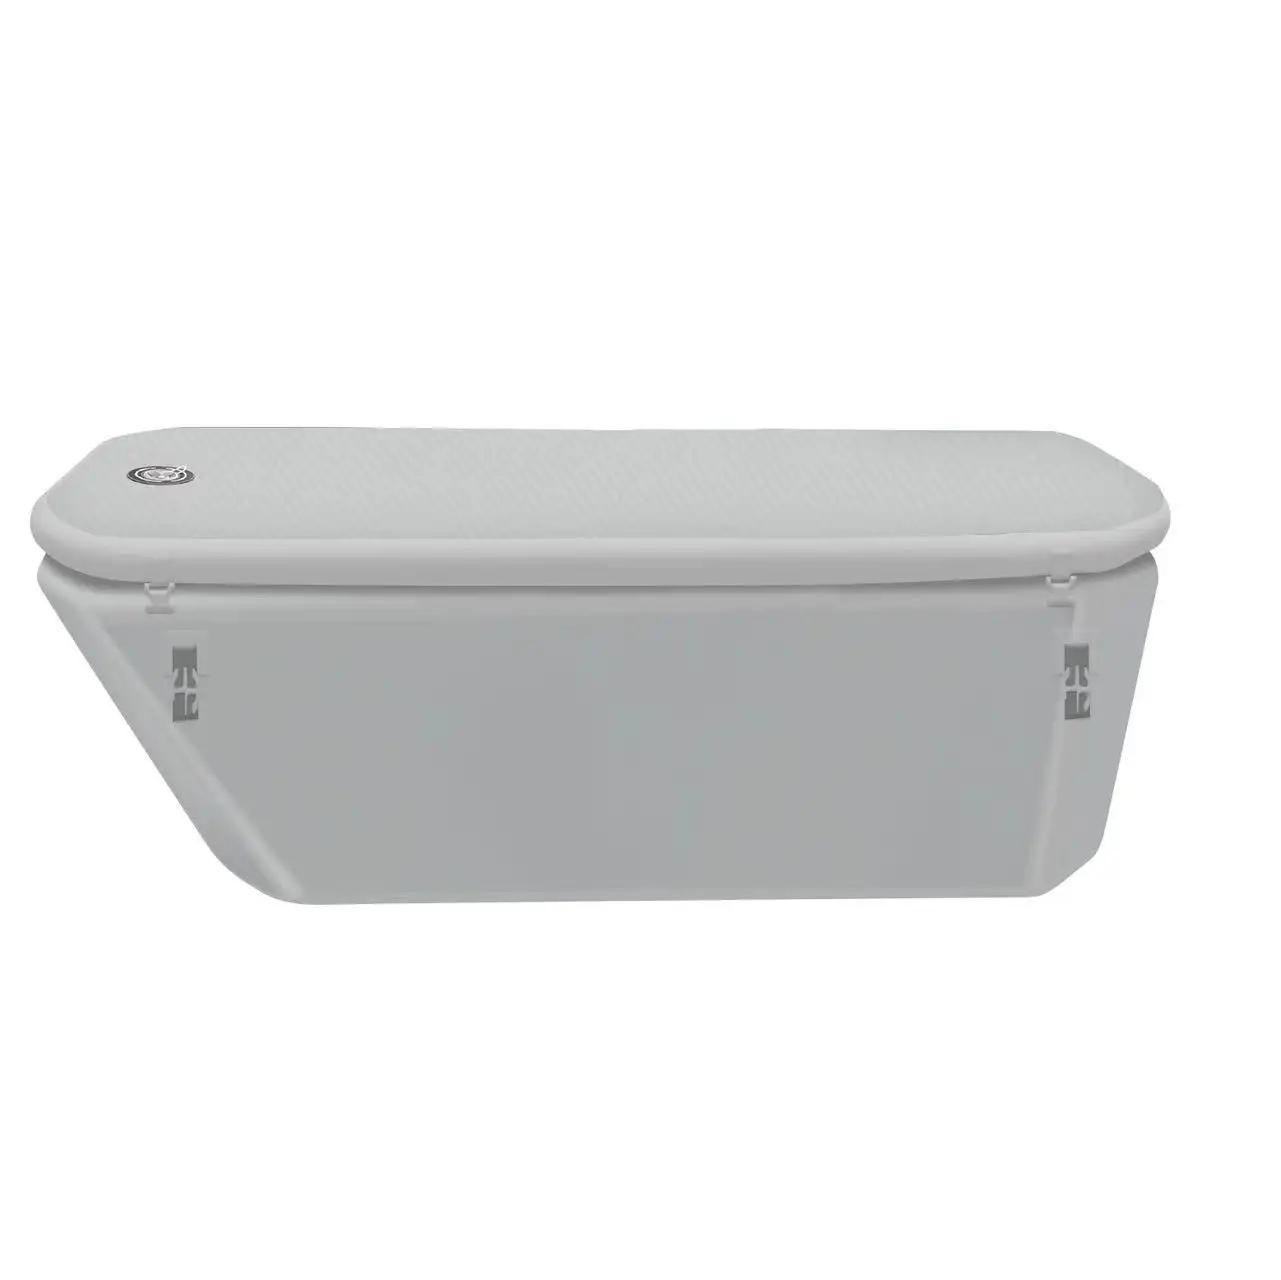 Naiya vendita calda dimensioni personalizzate Dropstitch gonfiabile portatile vasca da bagno barile piscina terapia del freddo tuffo bagno di ghiaccio recupero Pod